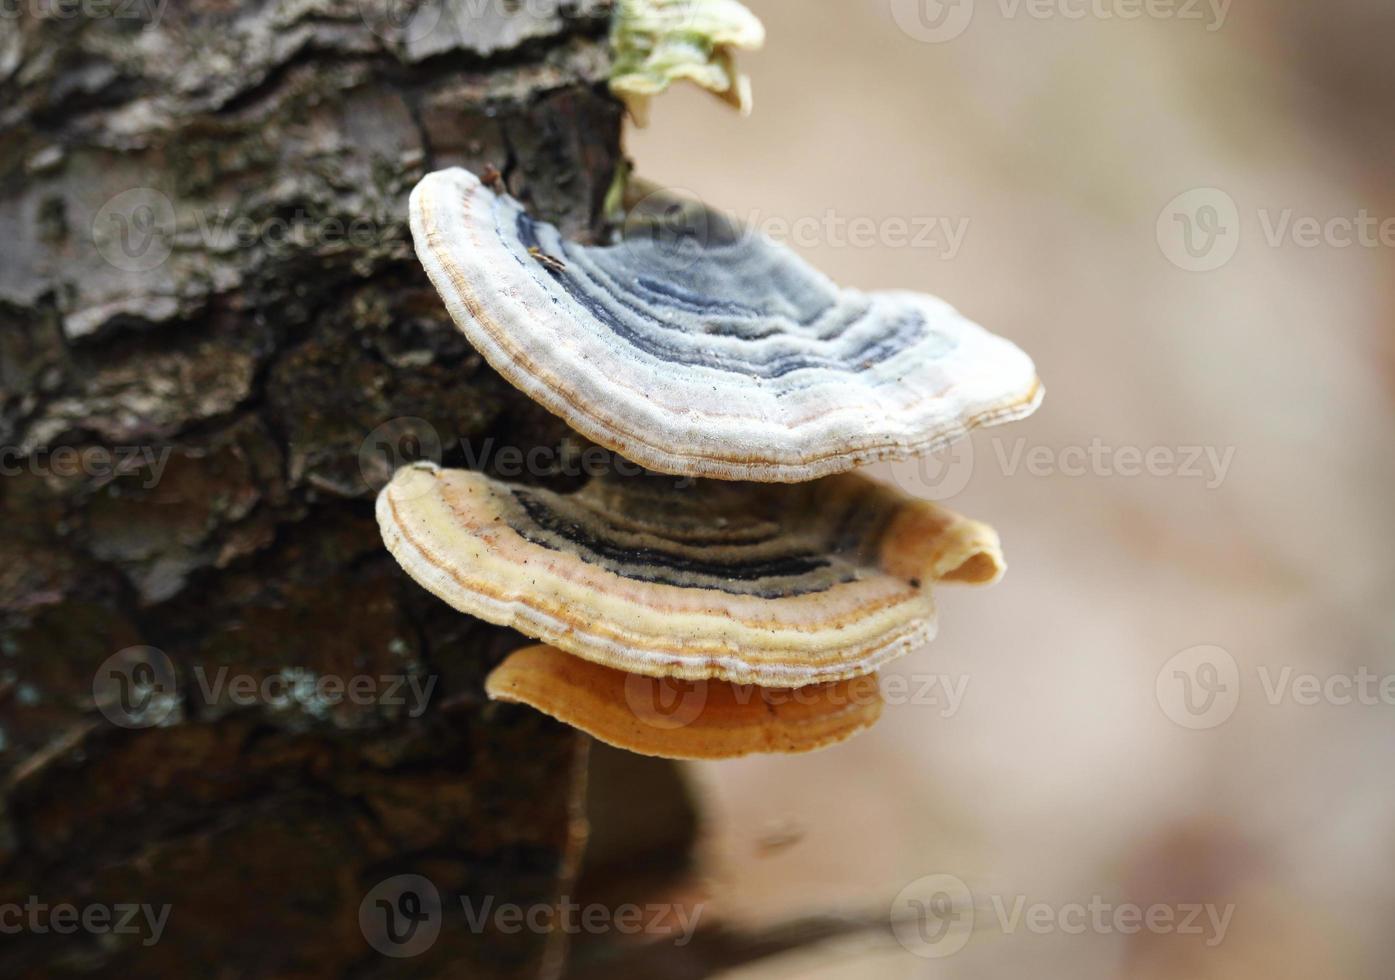 wilde junge Pilze wachsen auf Baumstamm foto